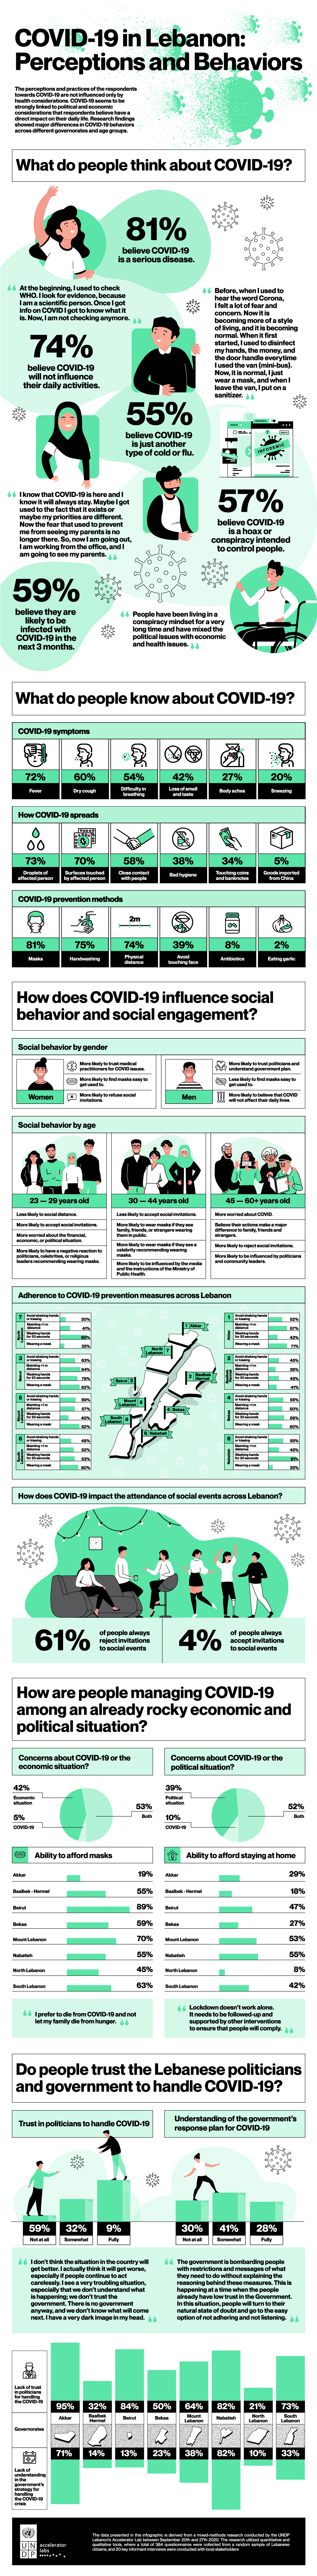 UNDP covid 19 in lebanon perceptions and behaviors@3x